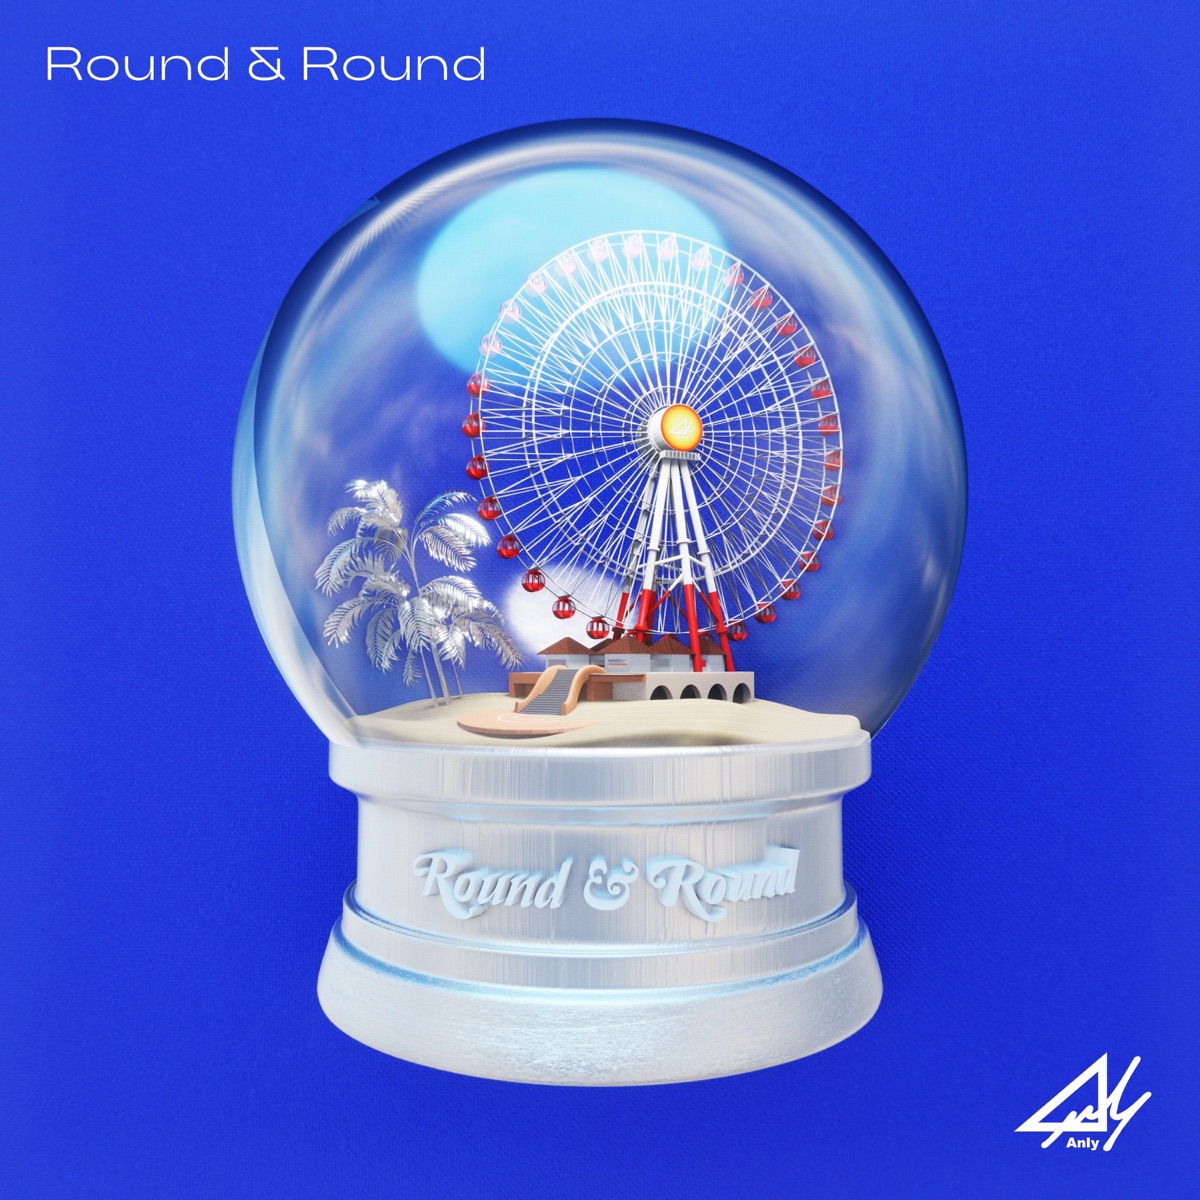 『Anly - Round & Round』収録の『Round & Round』ジャケット